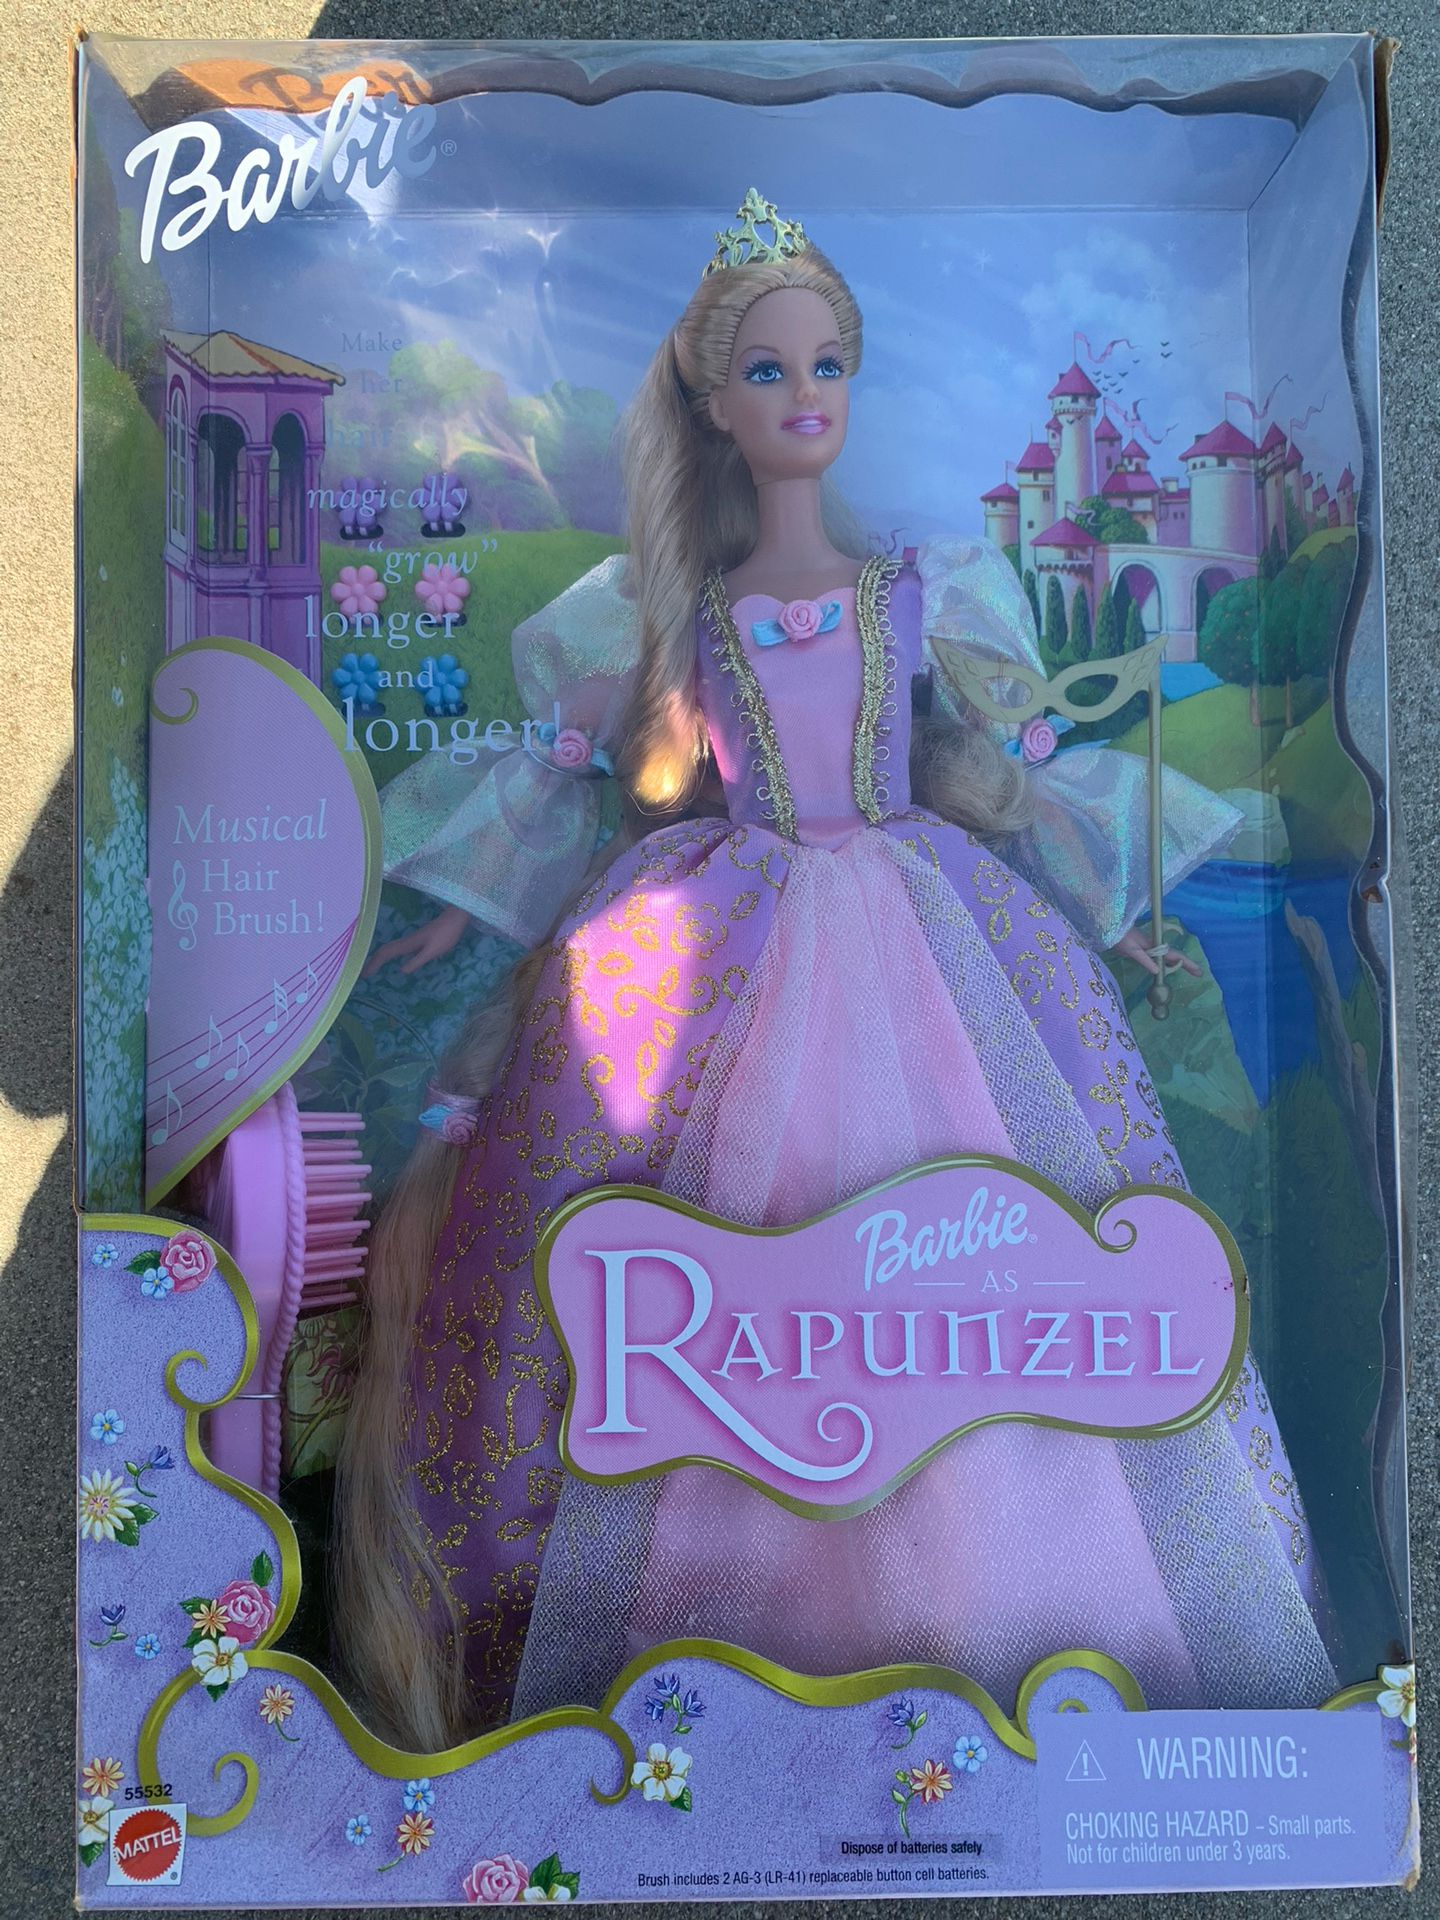 Collectors Edition Rapunzel Barbie 